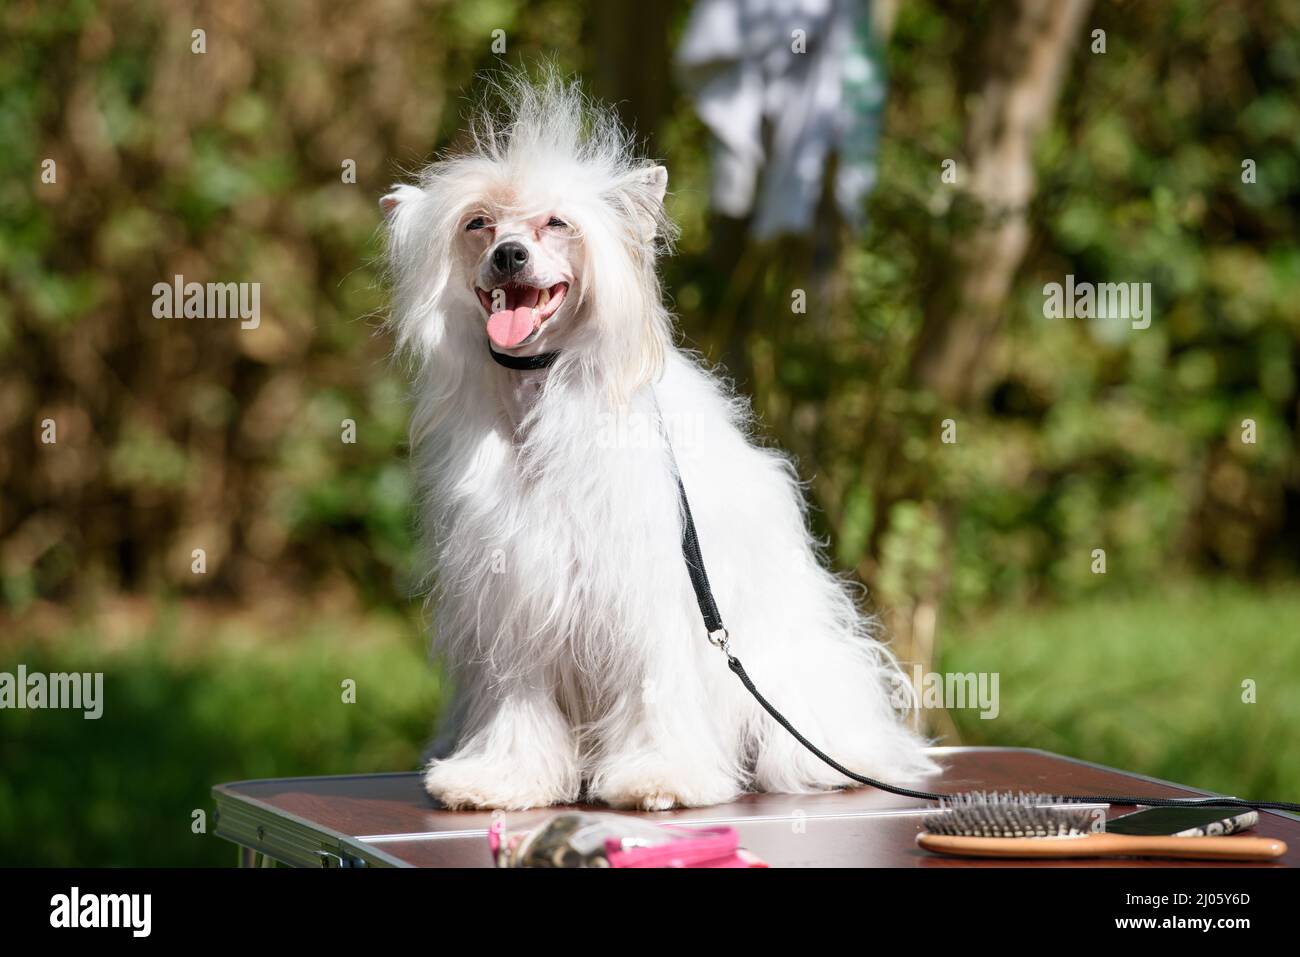 Un chien pouf chinois à la poudre se trouve sur une table, debout à l'extérieur, sur fond d'arbres. Banque D'Images